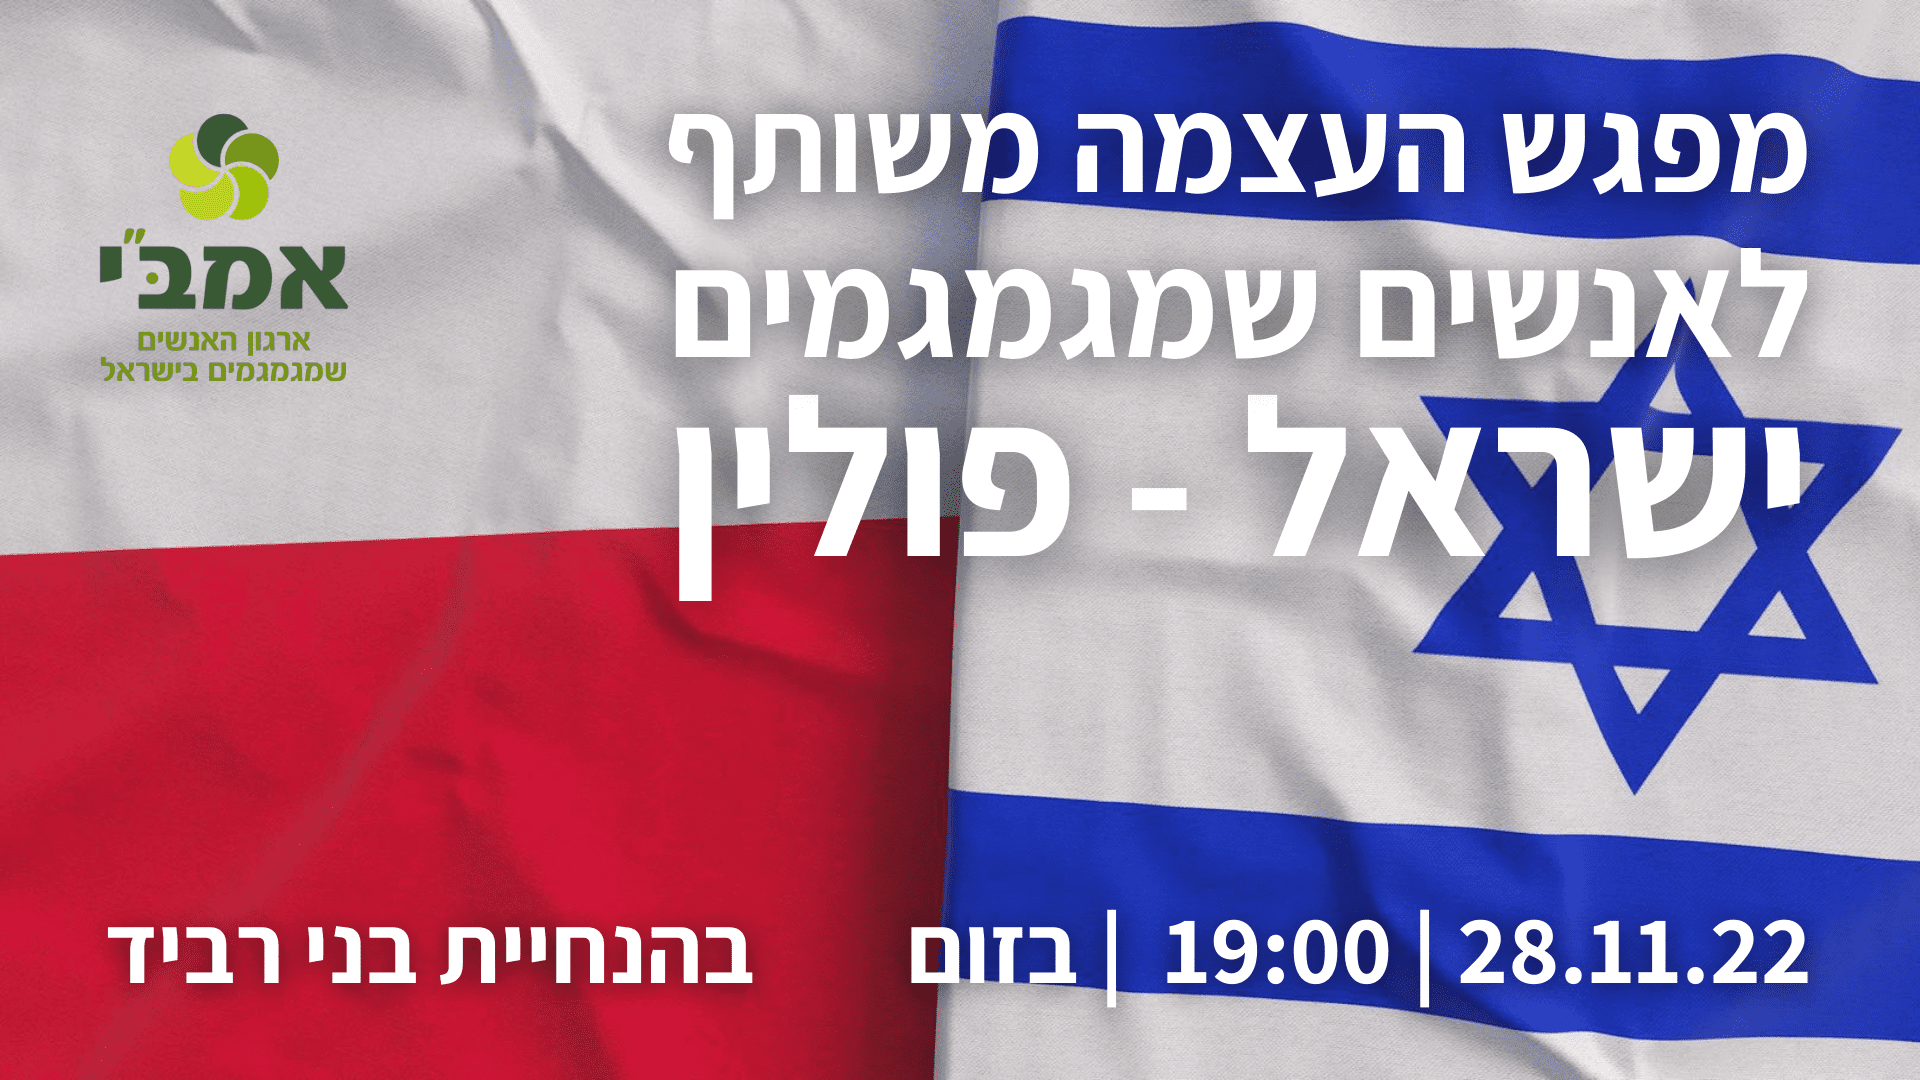 מפגש העצמה לאנשים שמגמגמים ישראל פולין